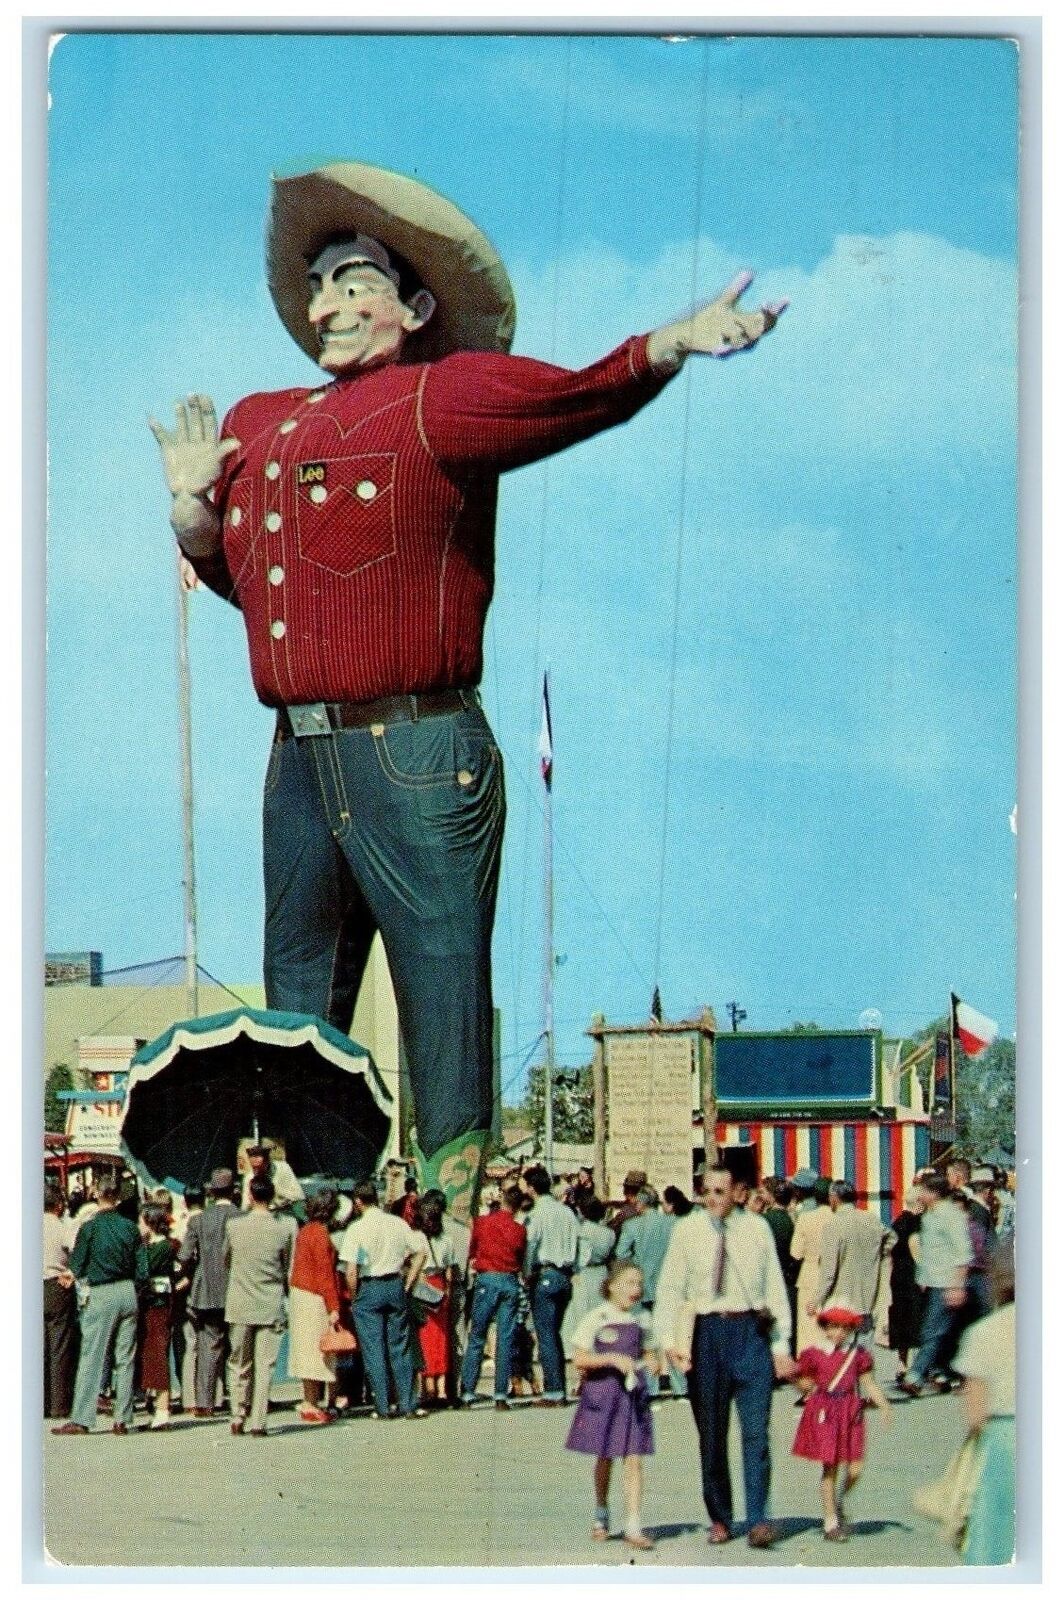 1962 Big Tex Texas State Fair Grounds Friendliness View Dallas Texas TX Postcard